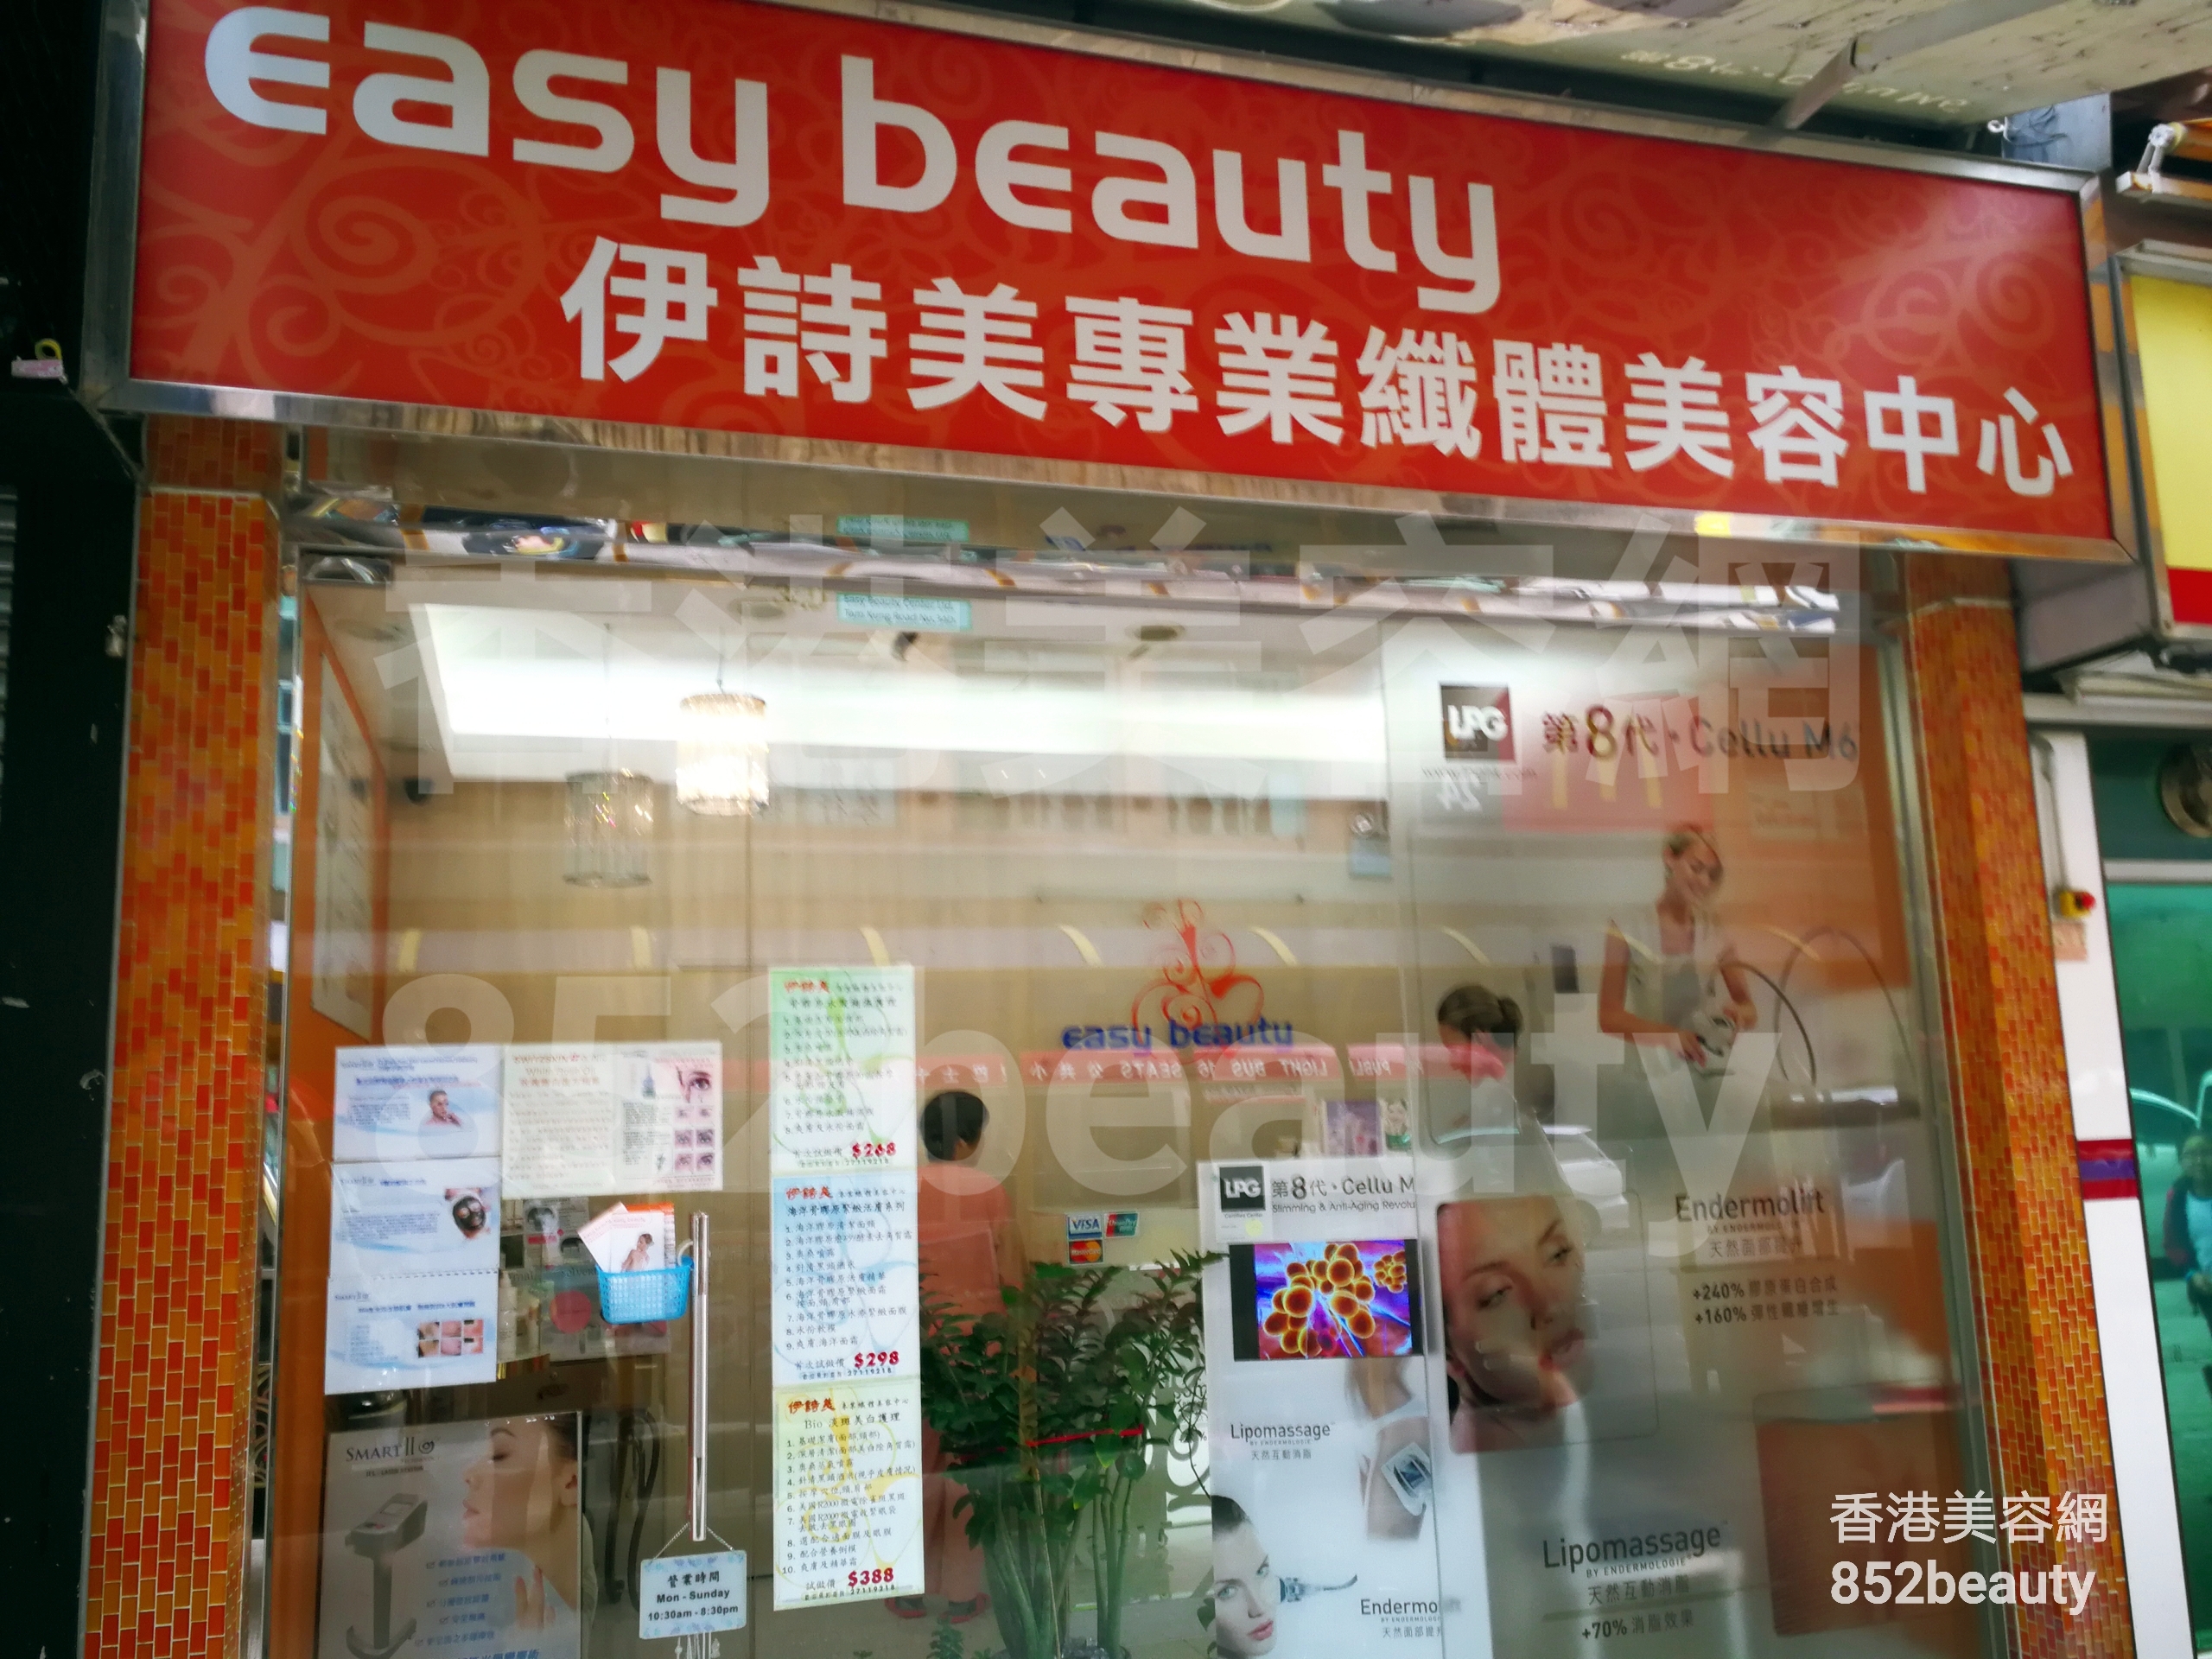 修眉/眼睫毛: Easy beauty 伊詩美專業纖體美容中心